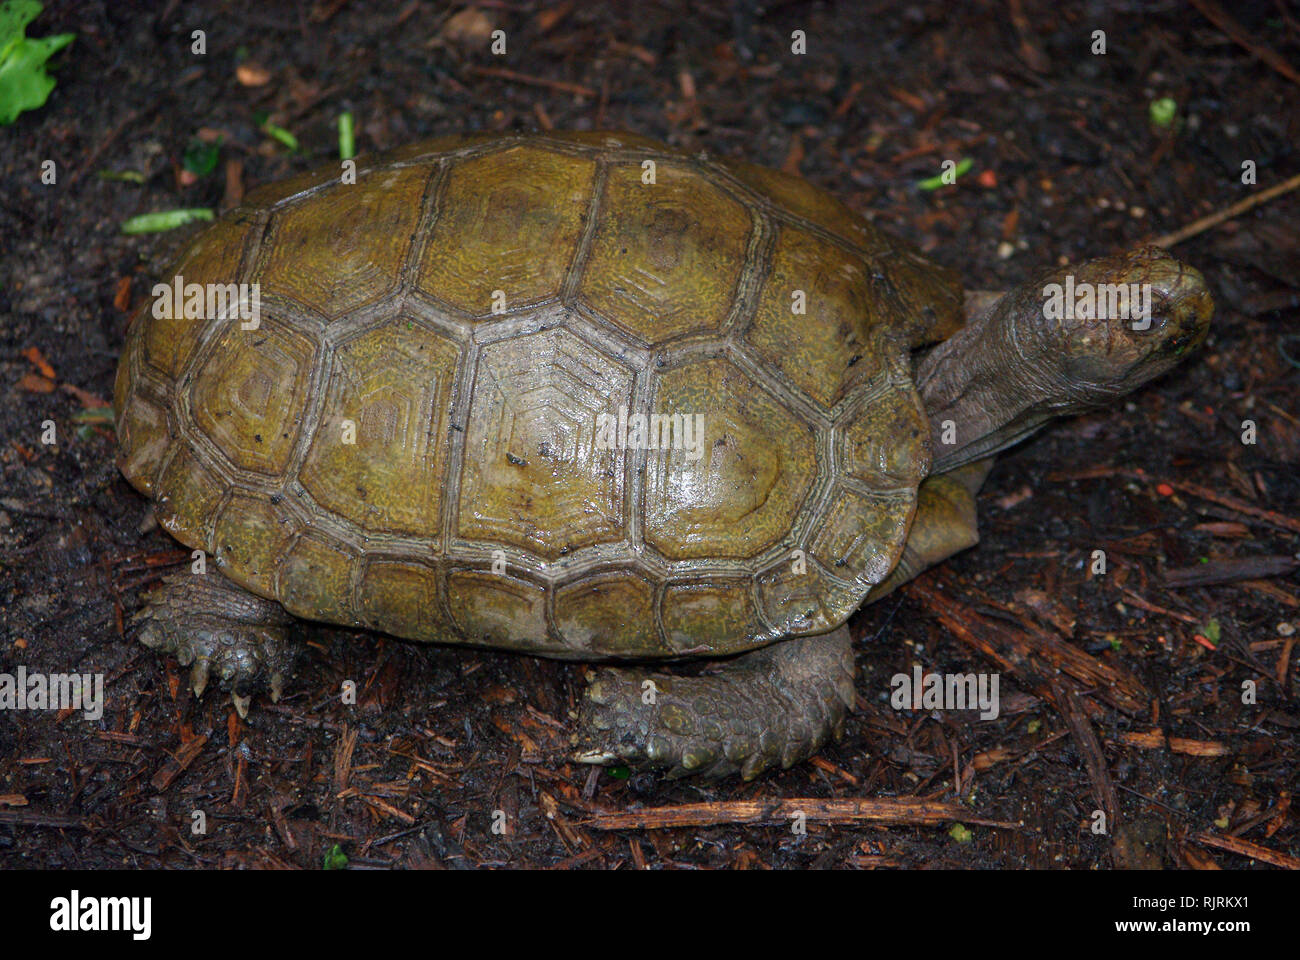 Asian forest or Giant tortoise (Manouria emys) Stock Photo